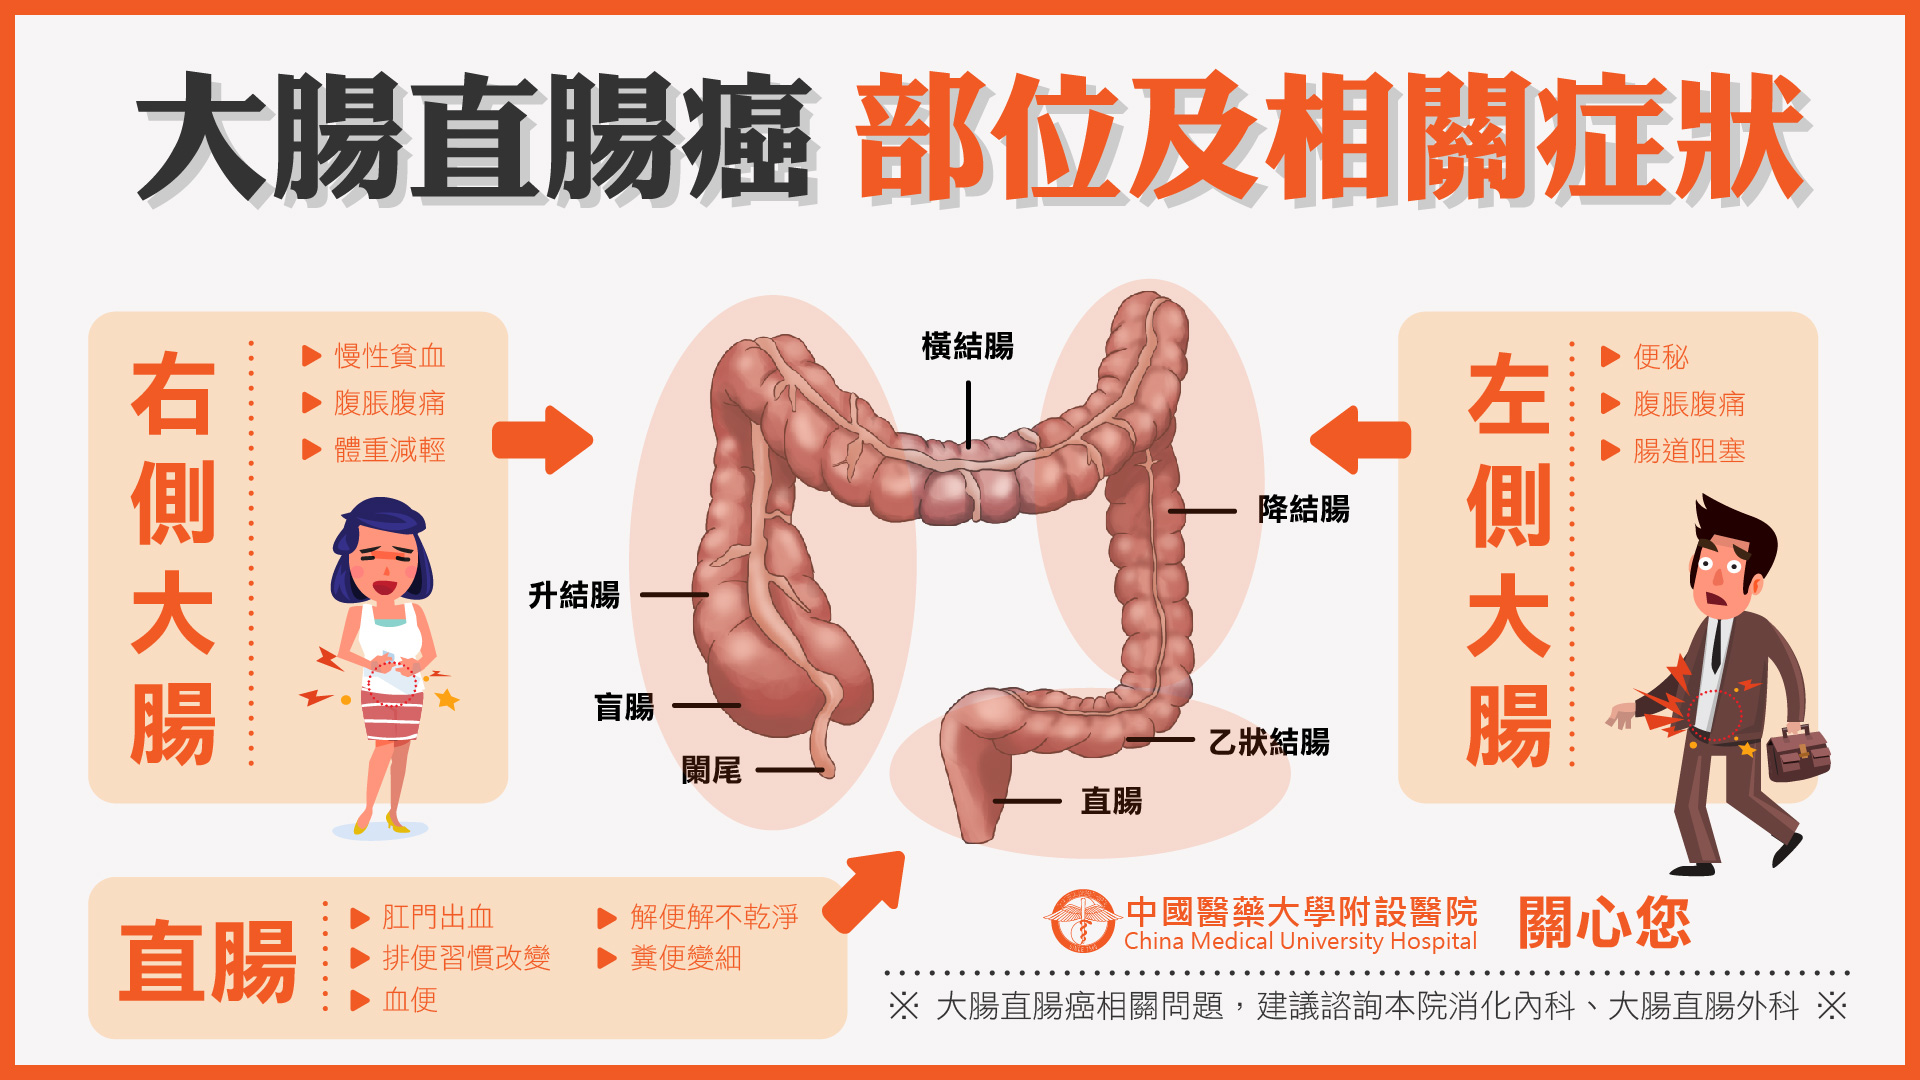 大腸直腸癌部位及相關症狀